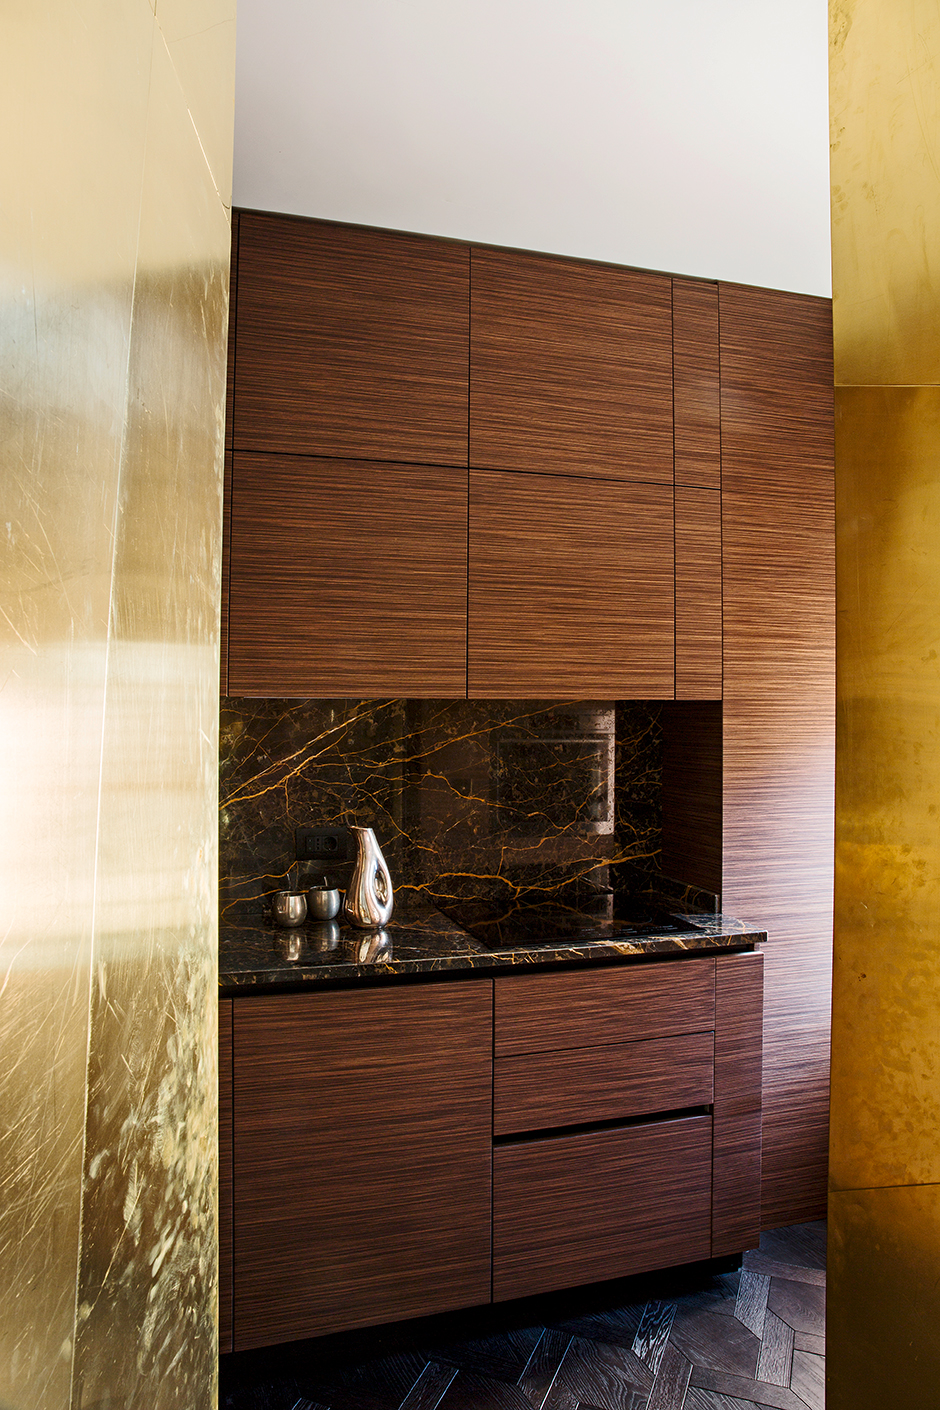 KTS Massimo Adario đã thiết kế phòng bếp trong căn hộ với kiểu tủ chữ I kích thước cao kịch trần nhằm tối ưu hóa không gian. Riêng backsplash được ốp đá cẩm thạch đường vân màu đen và cánh gián siêu sang chảnh.